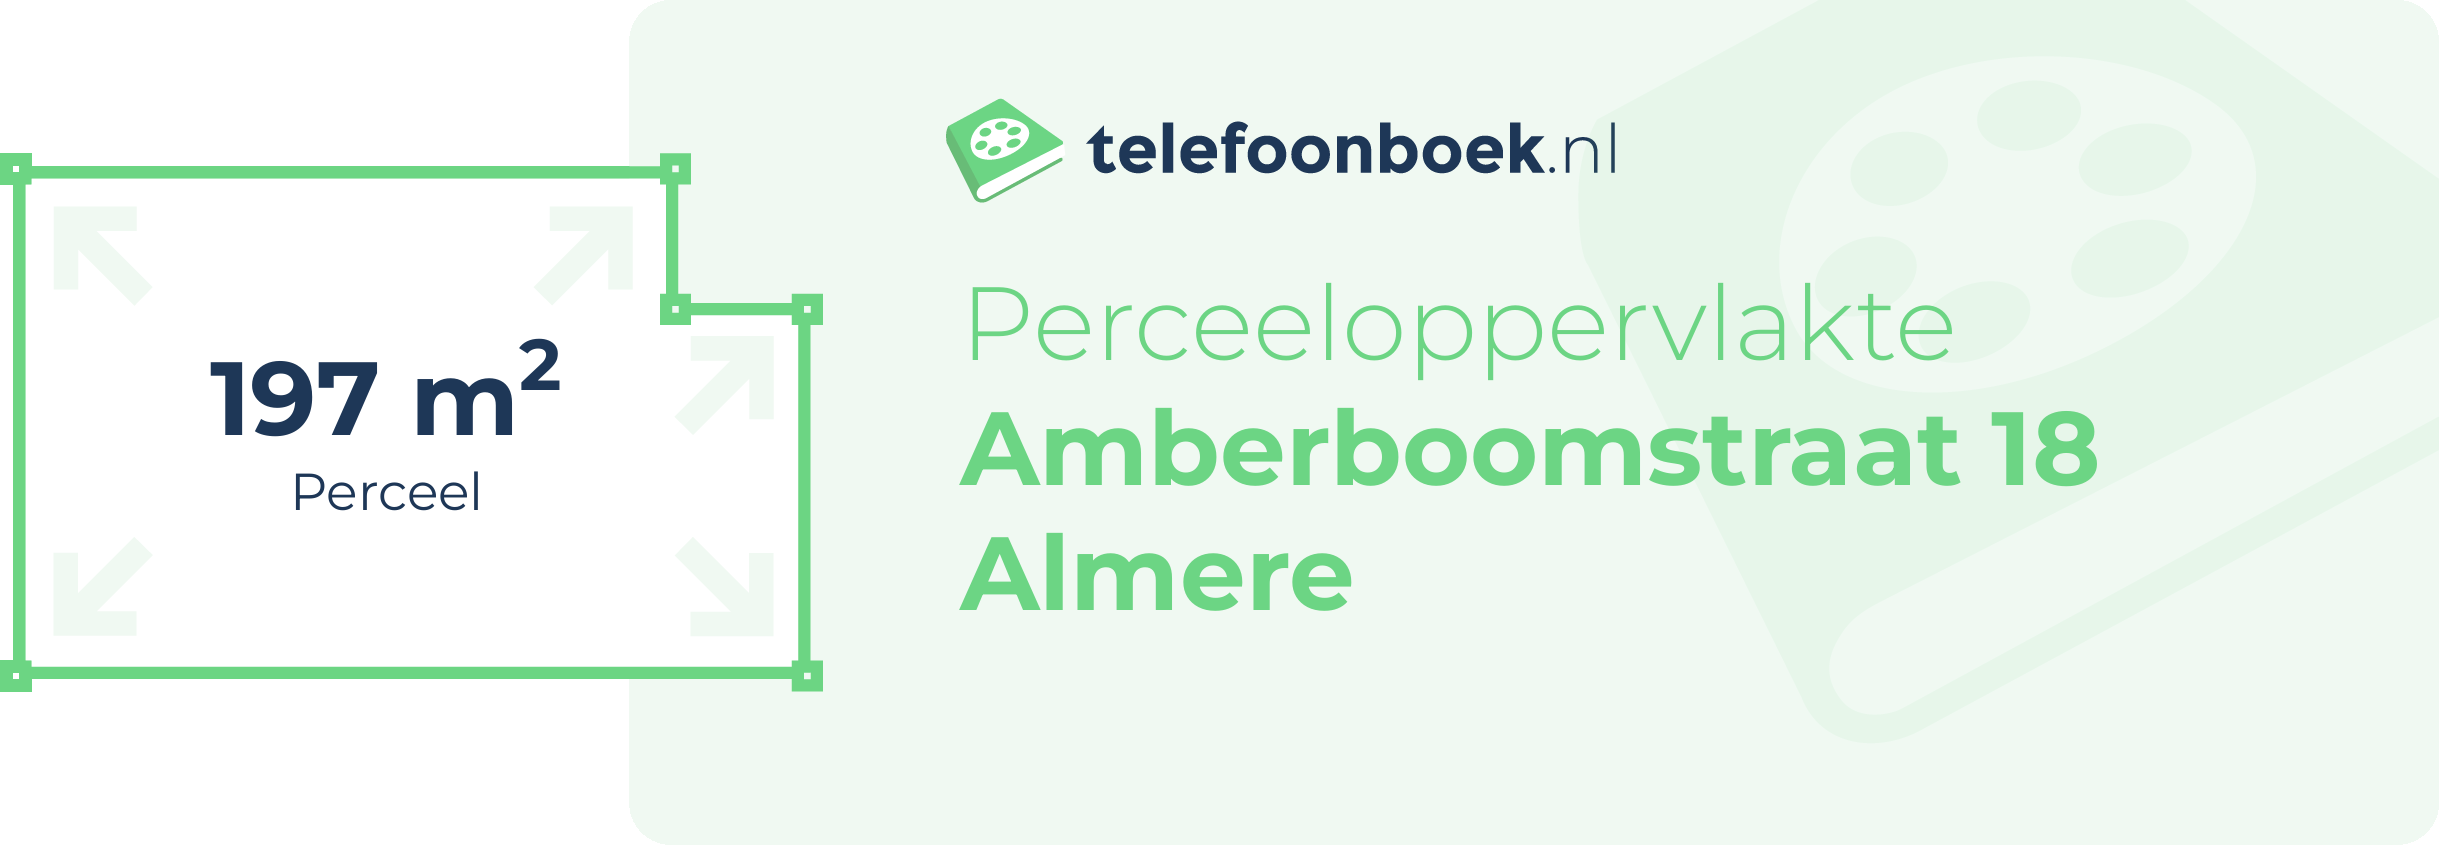 Perceeloppervlakte Amberboomstraat 18 Almere